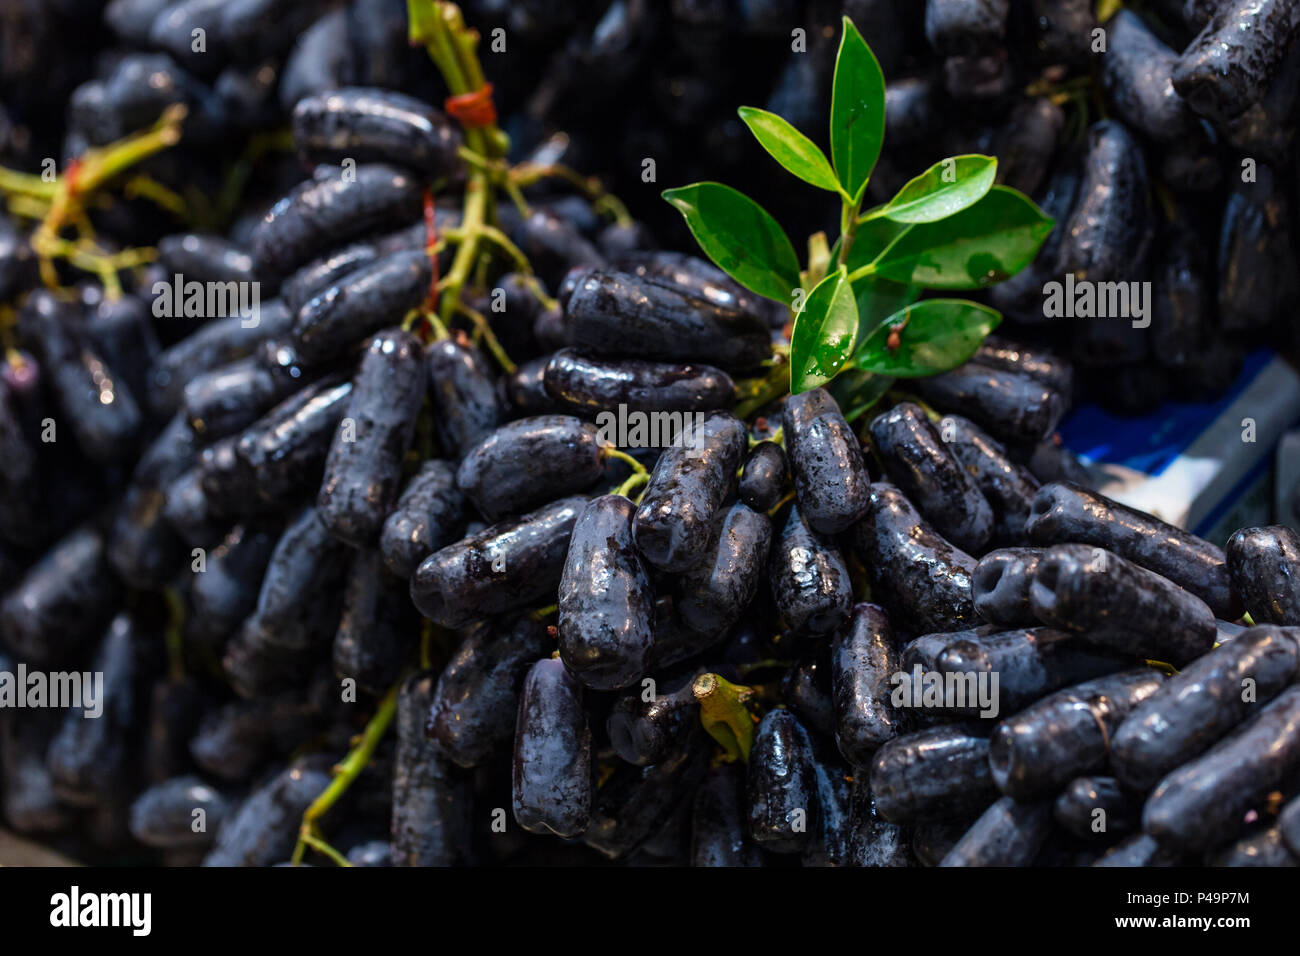 Hexe Finger Traube Frucht Verkauf auf dem Markt Stockfotografie - Alamy